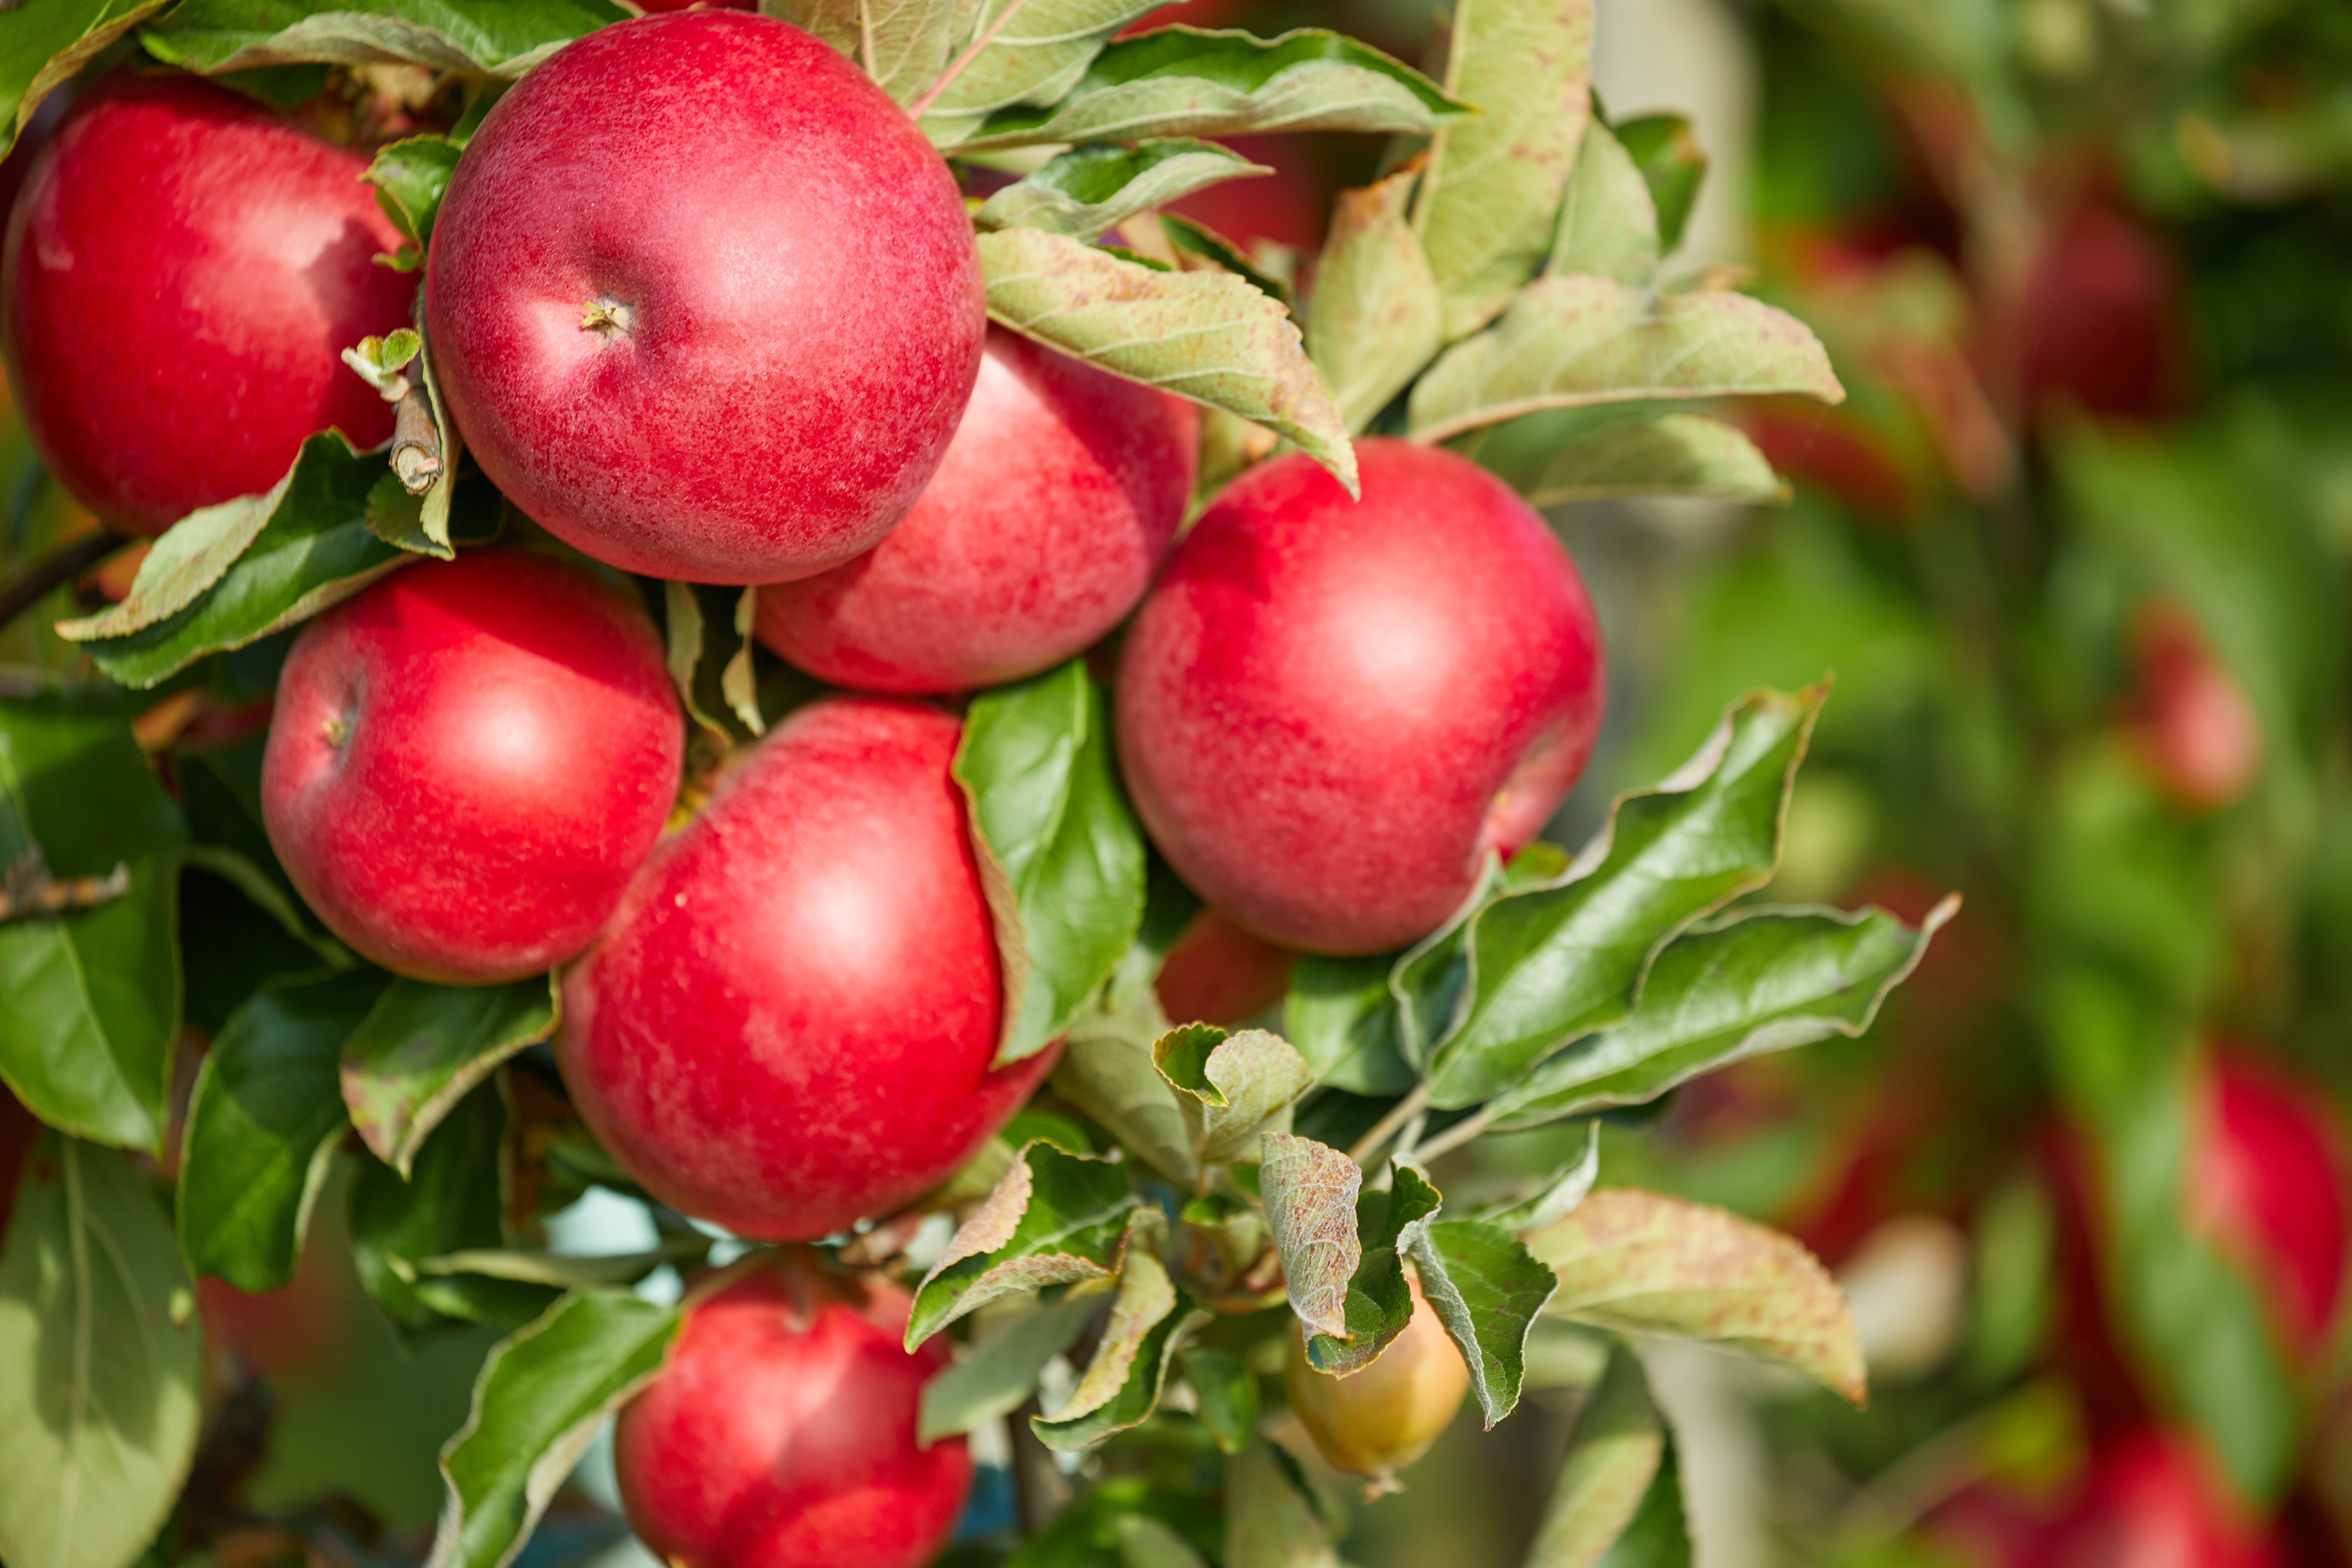 Fresh apples used in Kekoa Foods organic baby food.